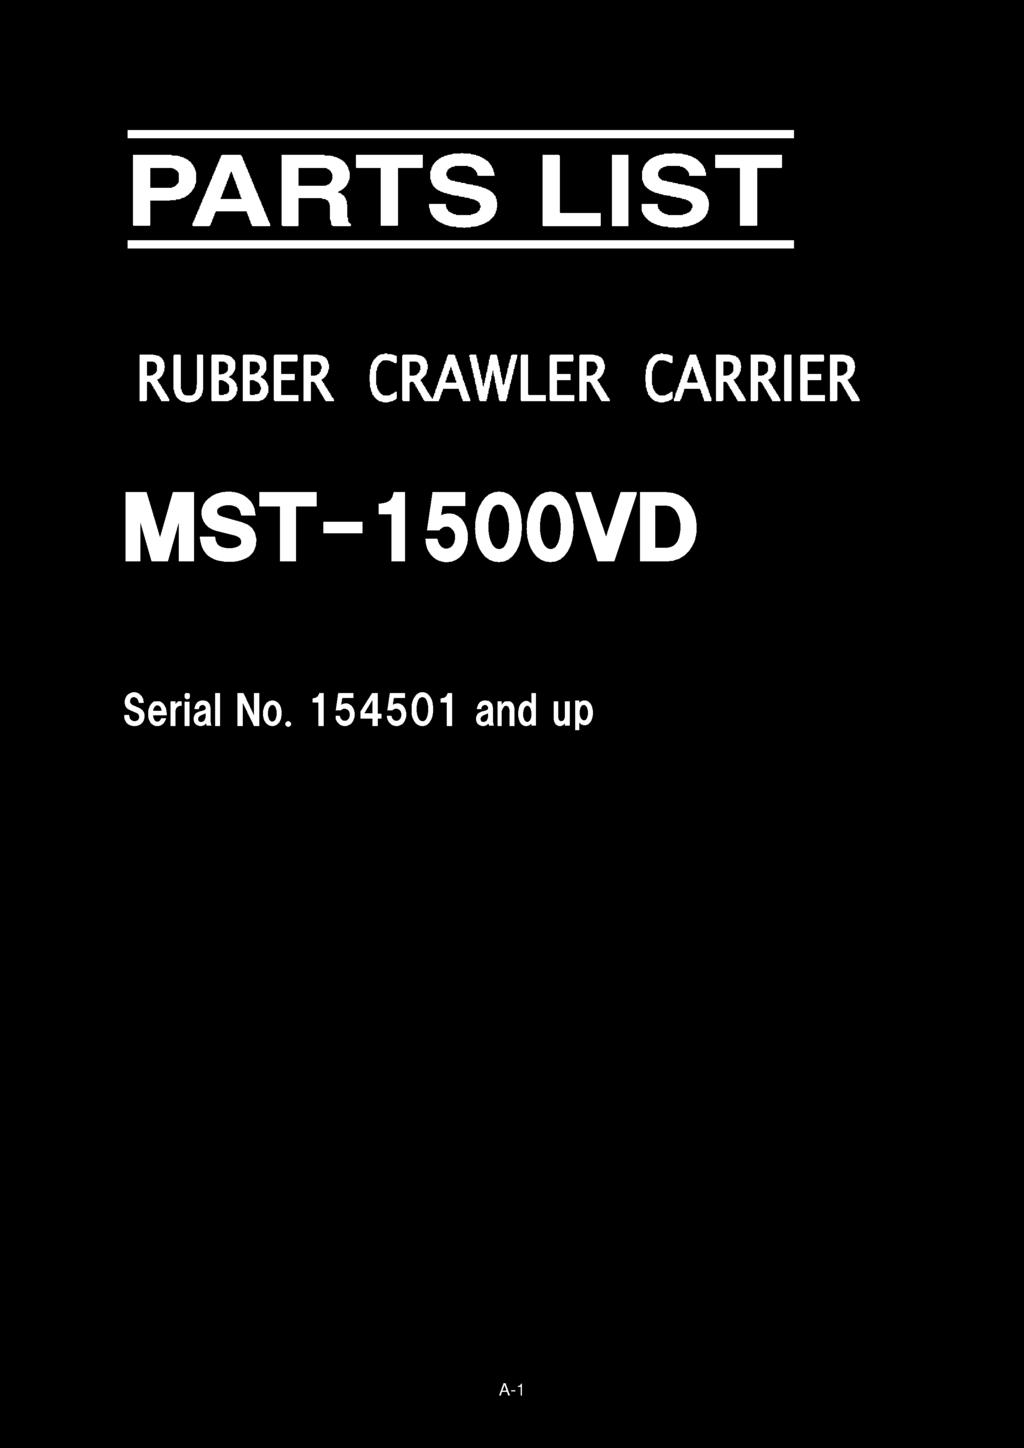 MST-1500VD Serial